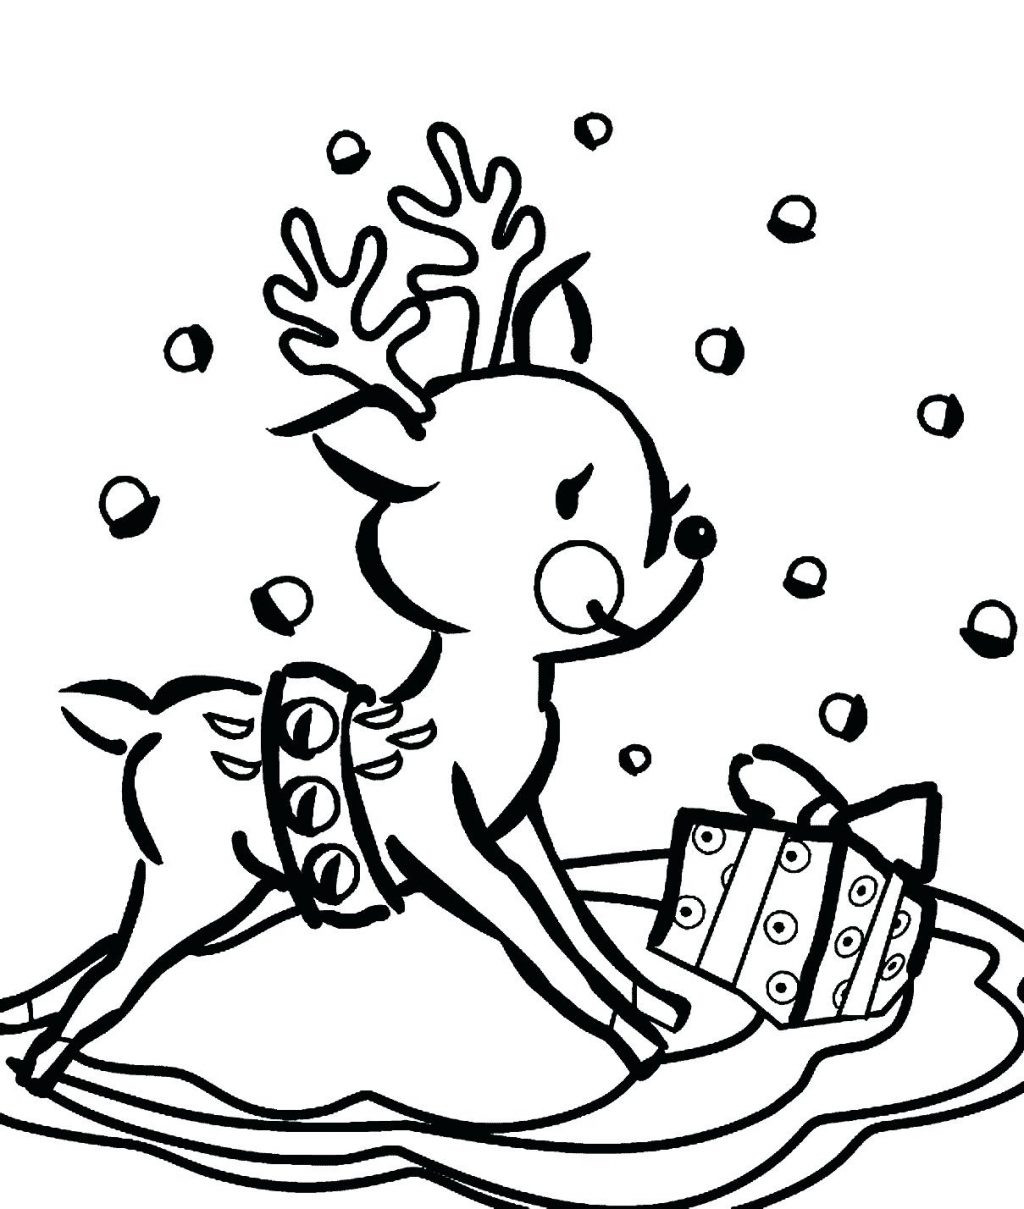 Cute Reindeer Coloring Pages at Free printable